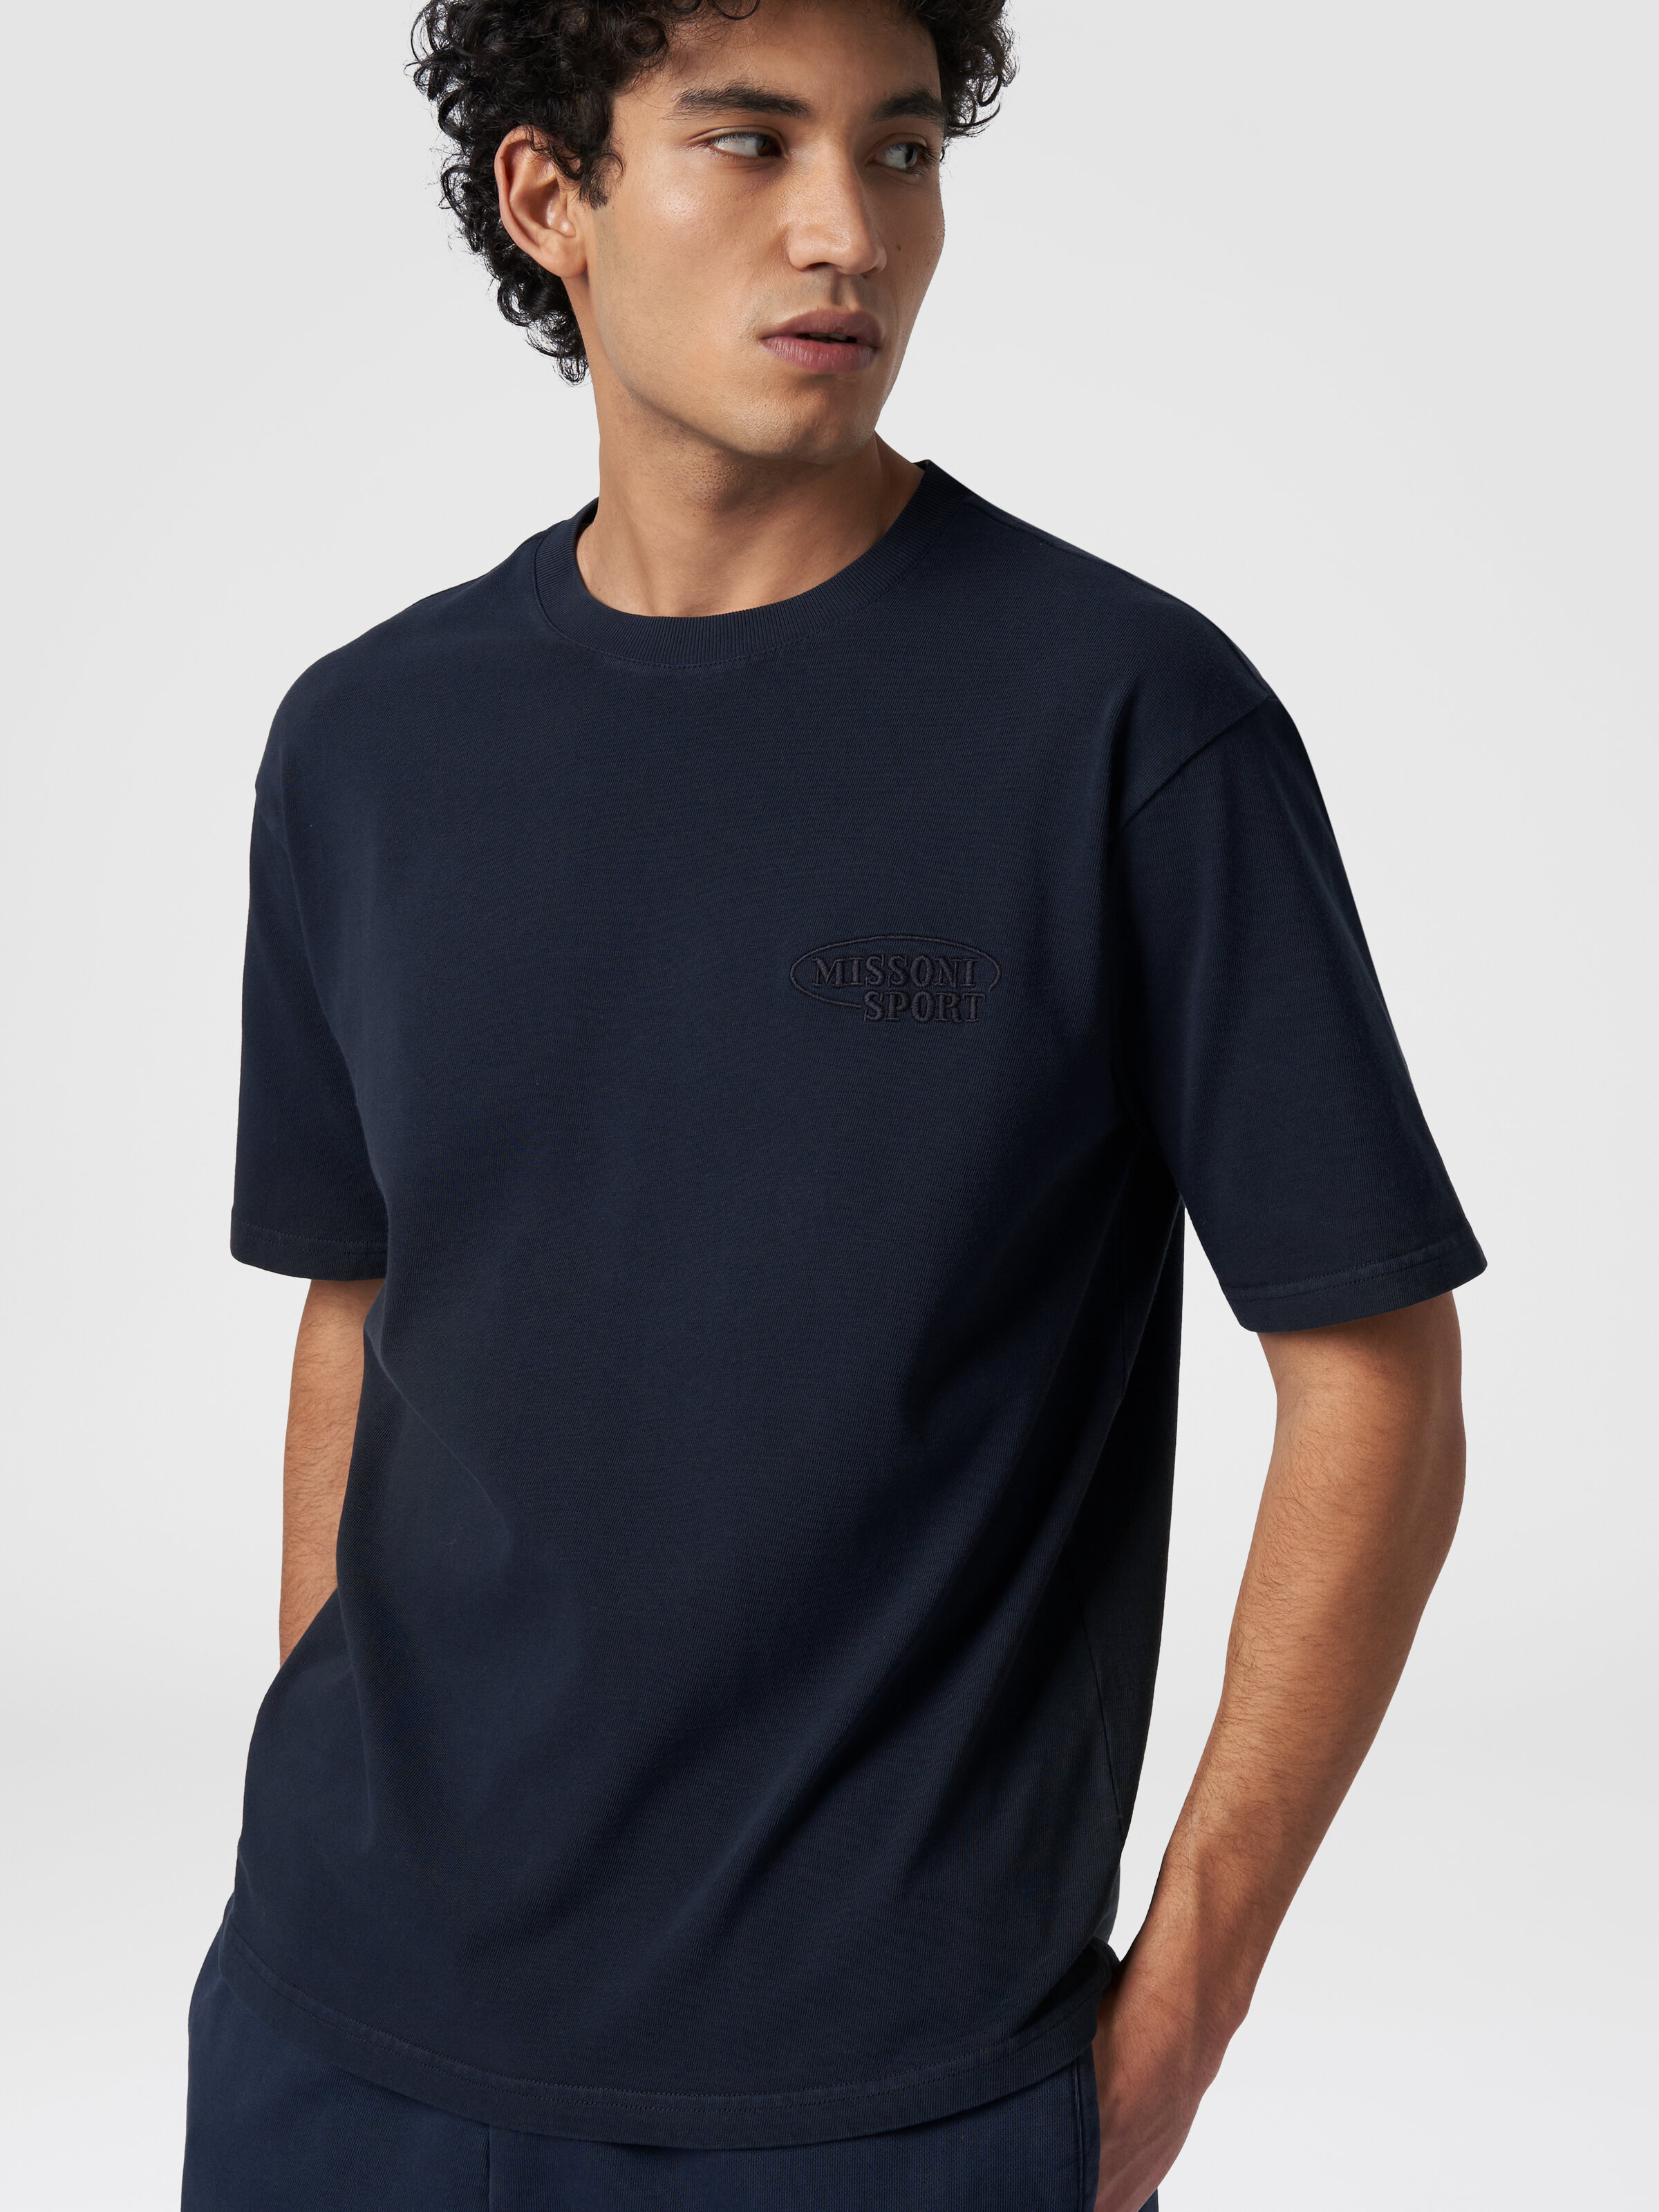 Baumwoll-T-Shirt mit Rundhalsausschnitt und Logo, Marineblau  - 3